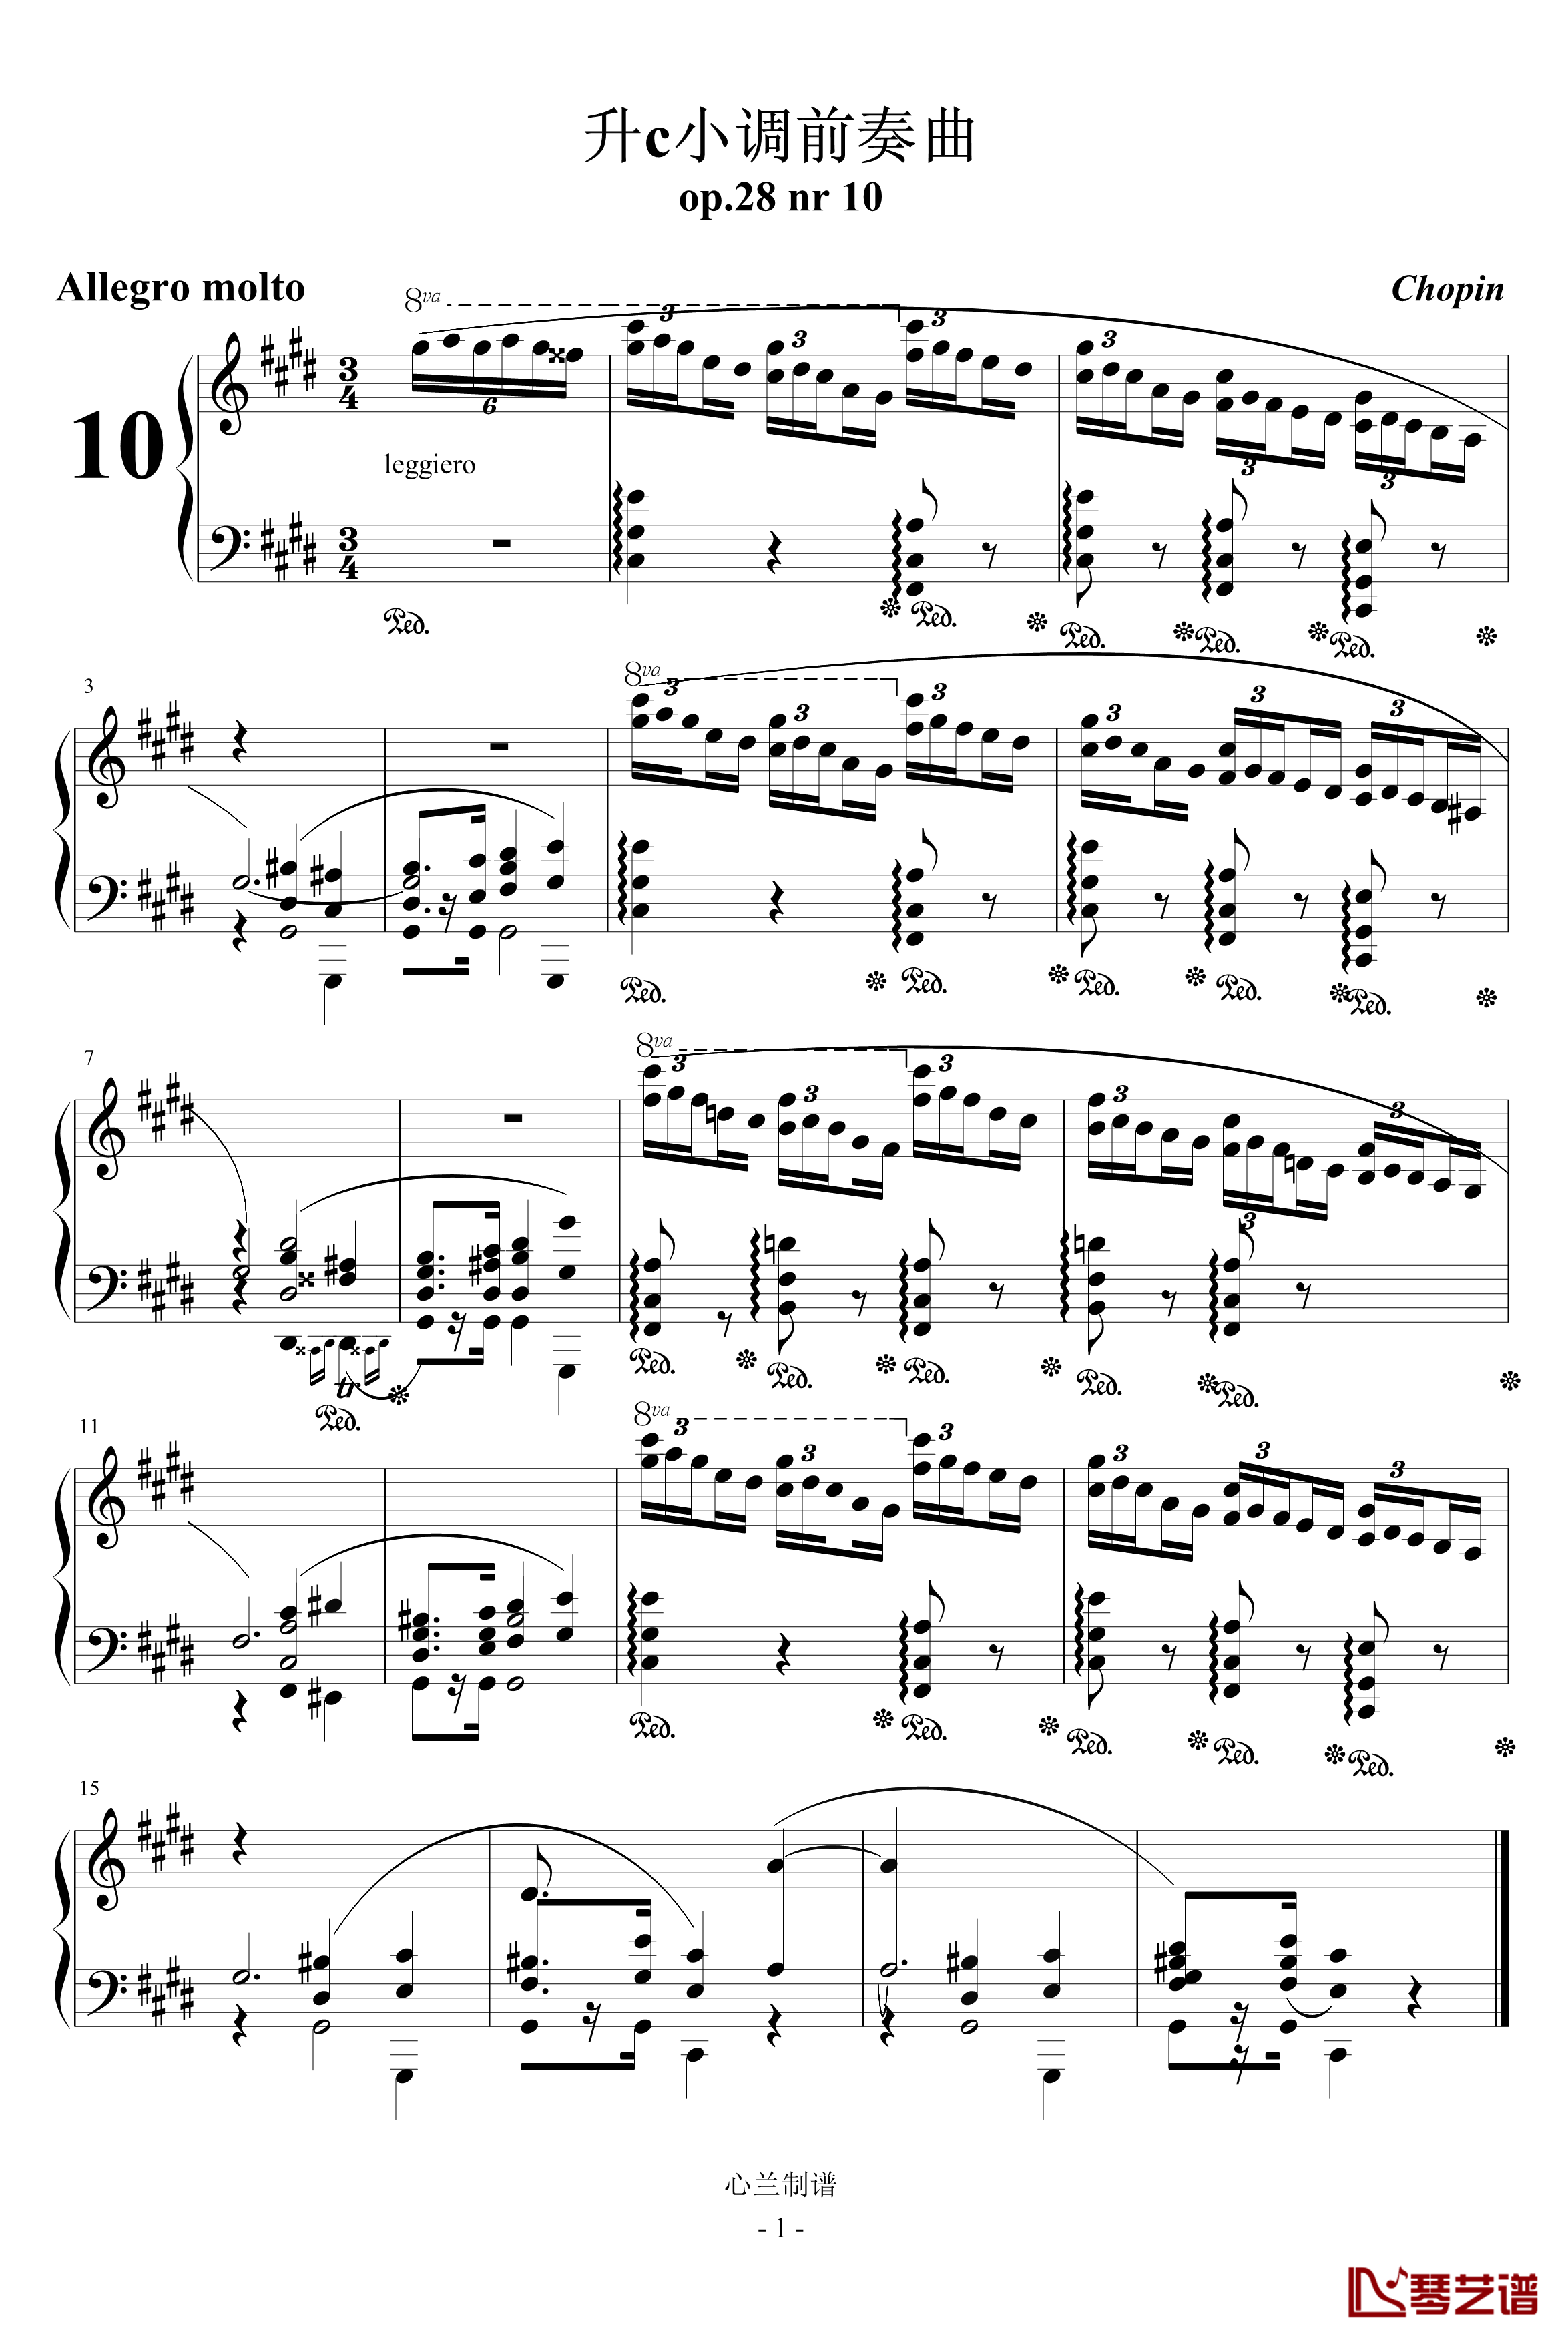 升c小调前奏曲钢琴谱-肖邦-chopin1